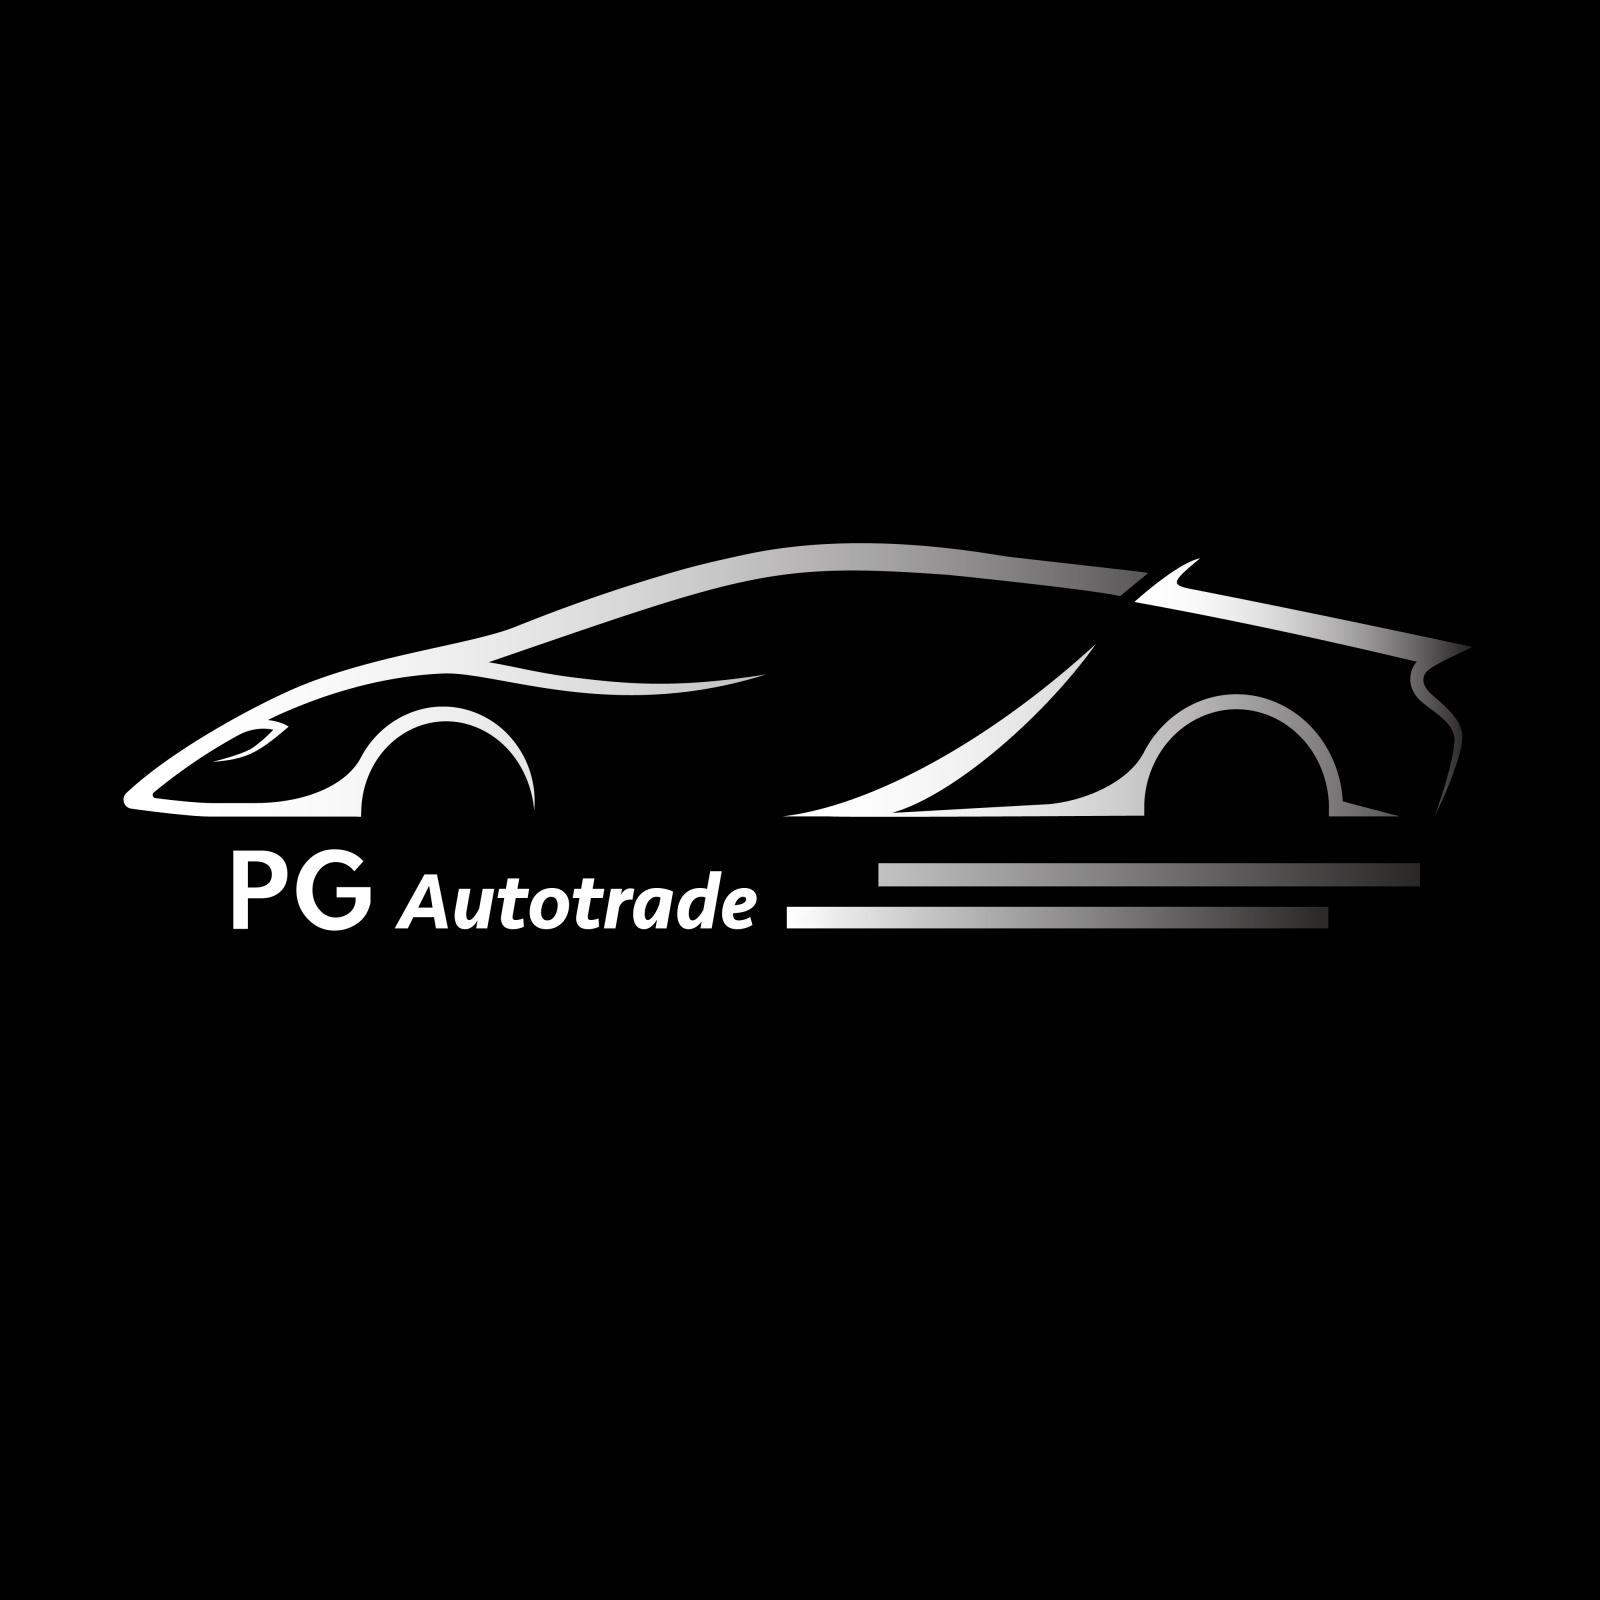  PG Autotrade